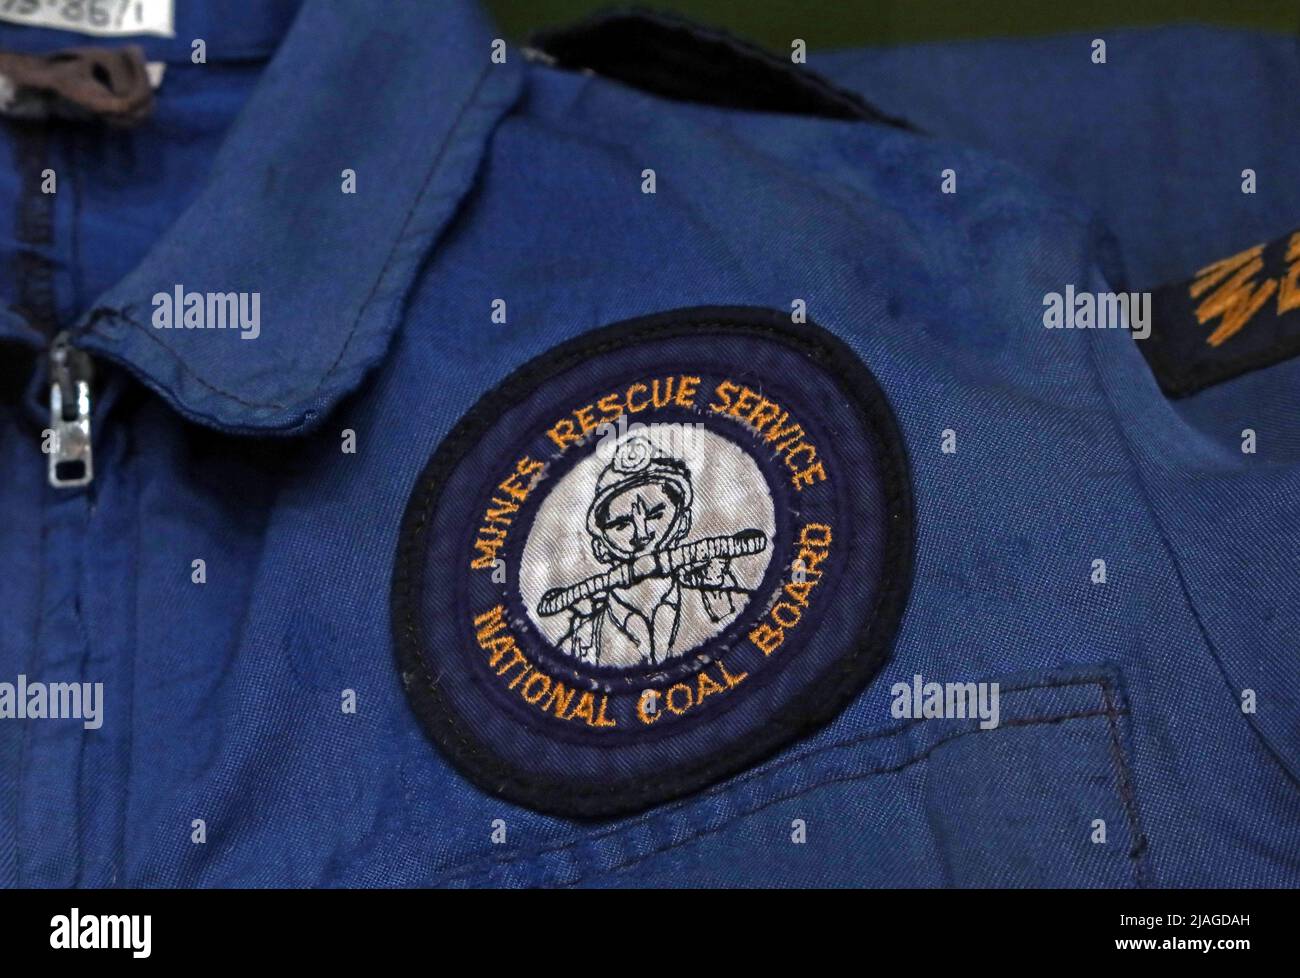 MME - badge du service de sauvetage des mines sur une veste, National Coal Board, pays de Galles du Sud, Royaume-Uni Banque D'Images